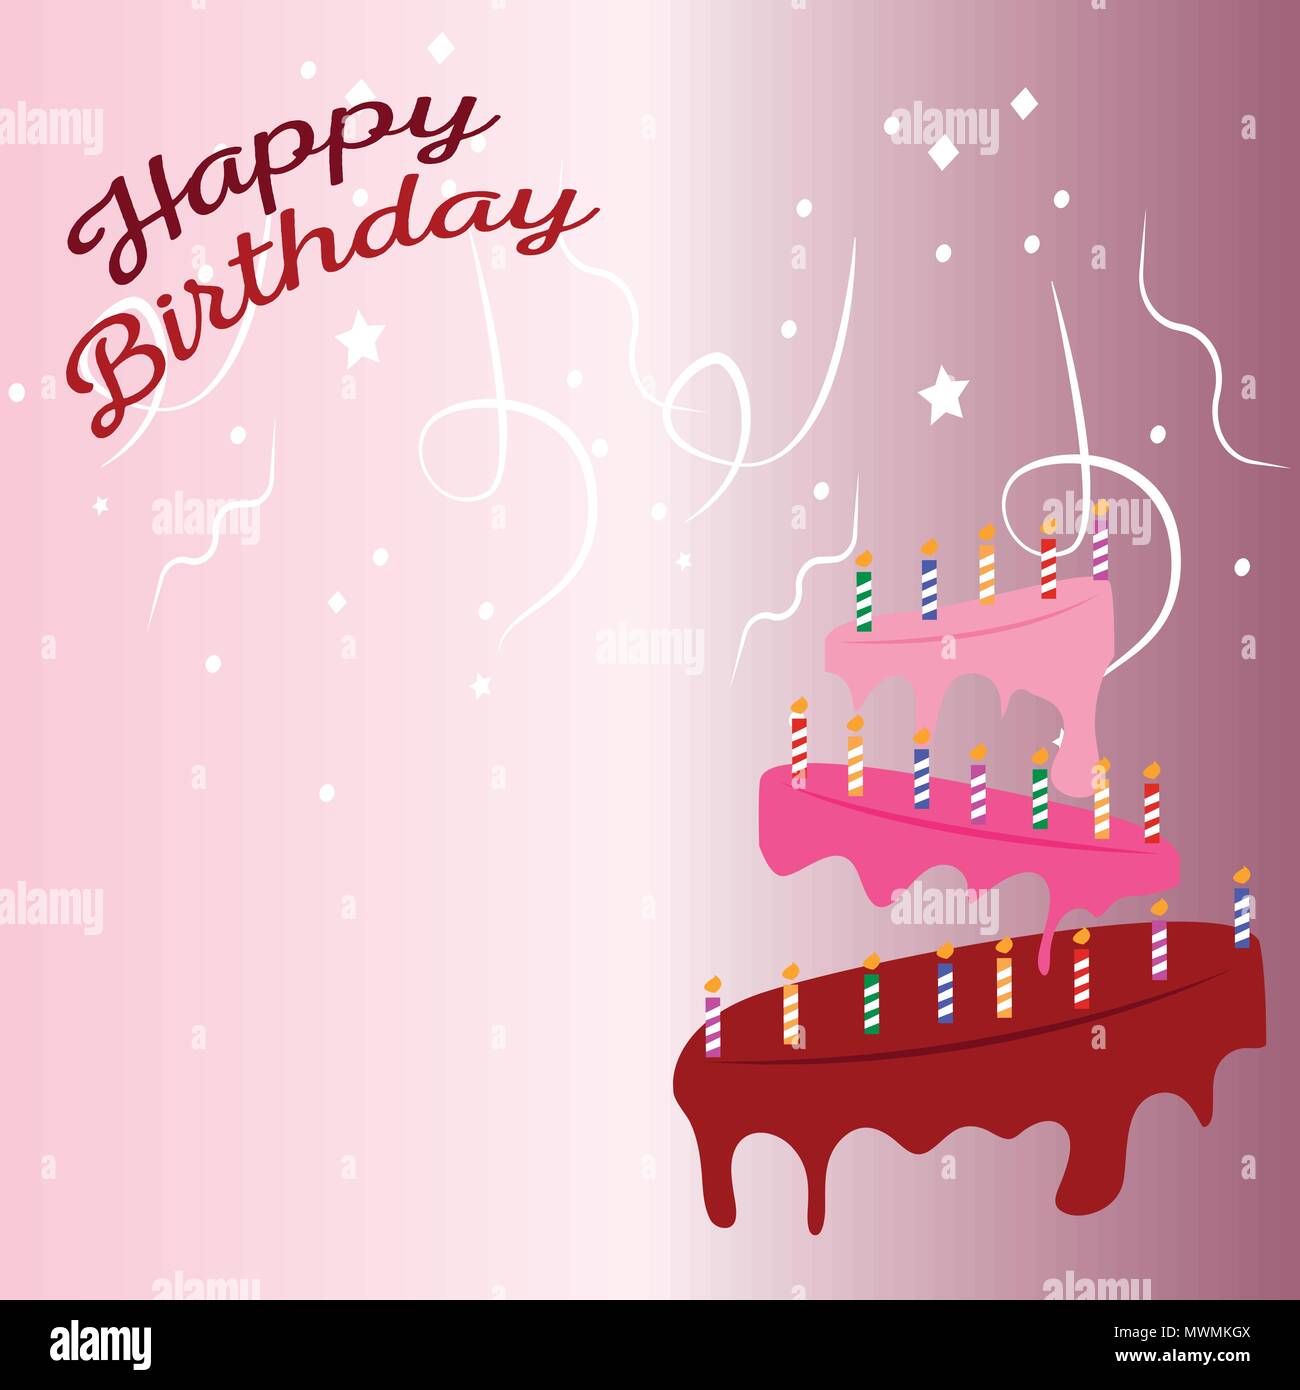 Happy Birthday Background Stock Vector Image & Art - Alamy